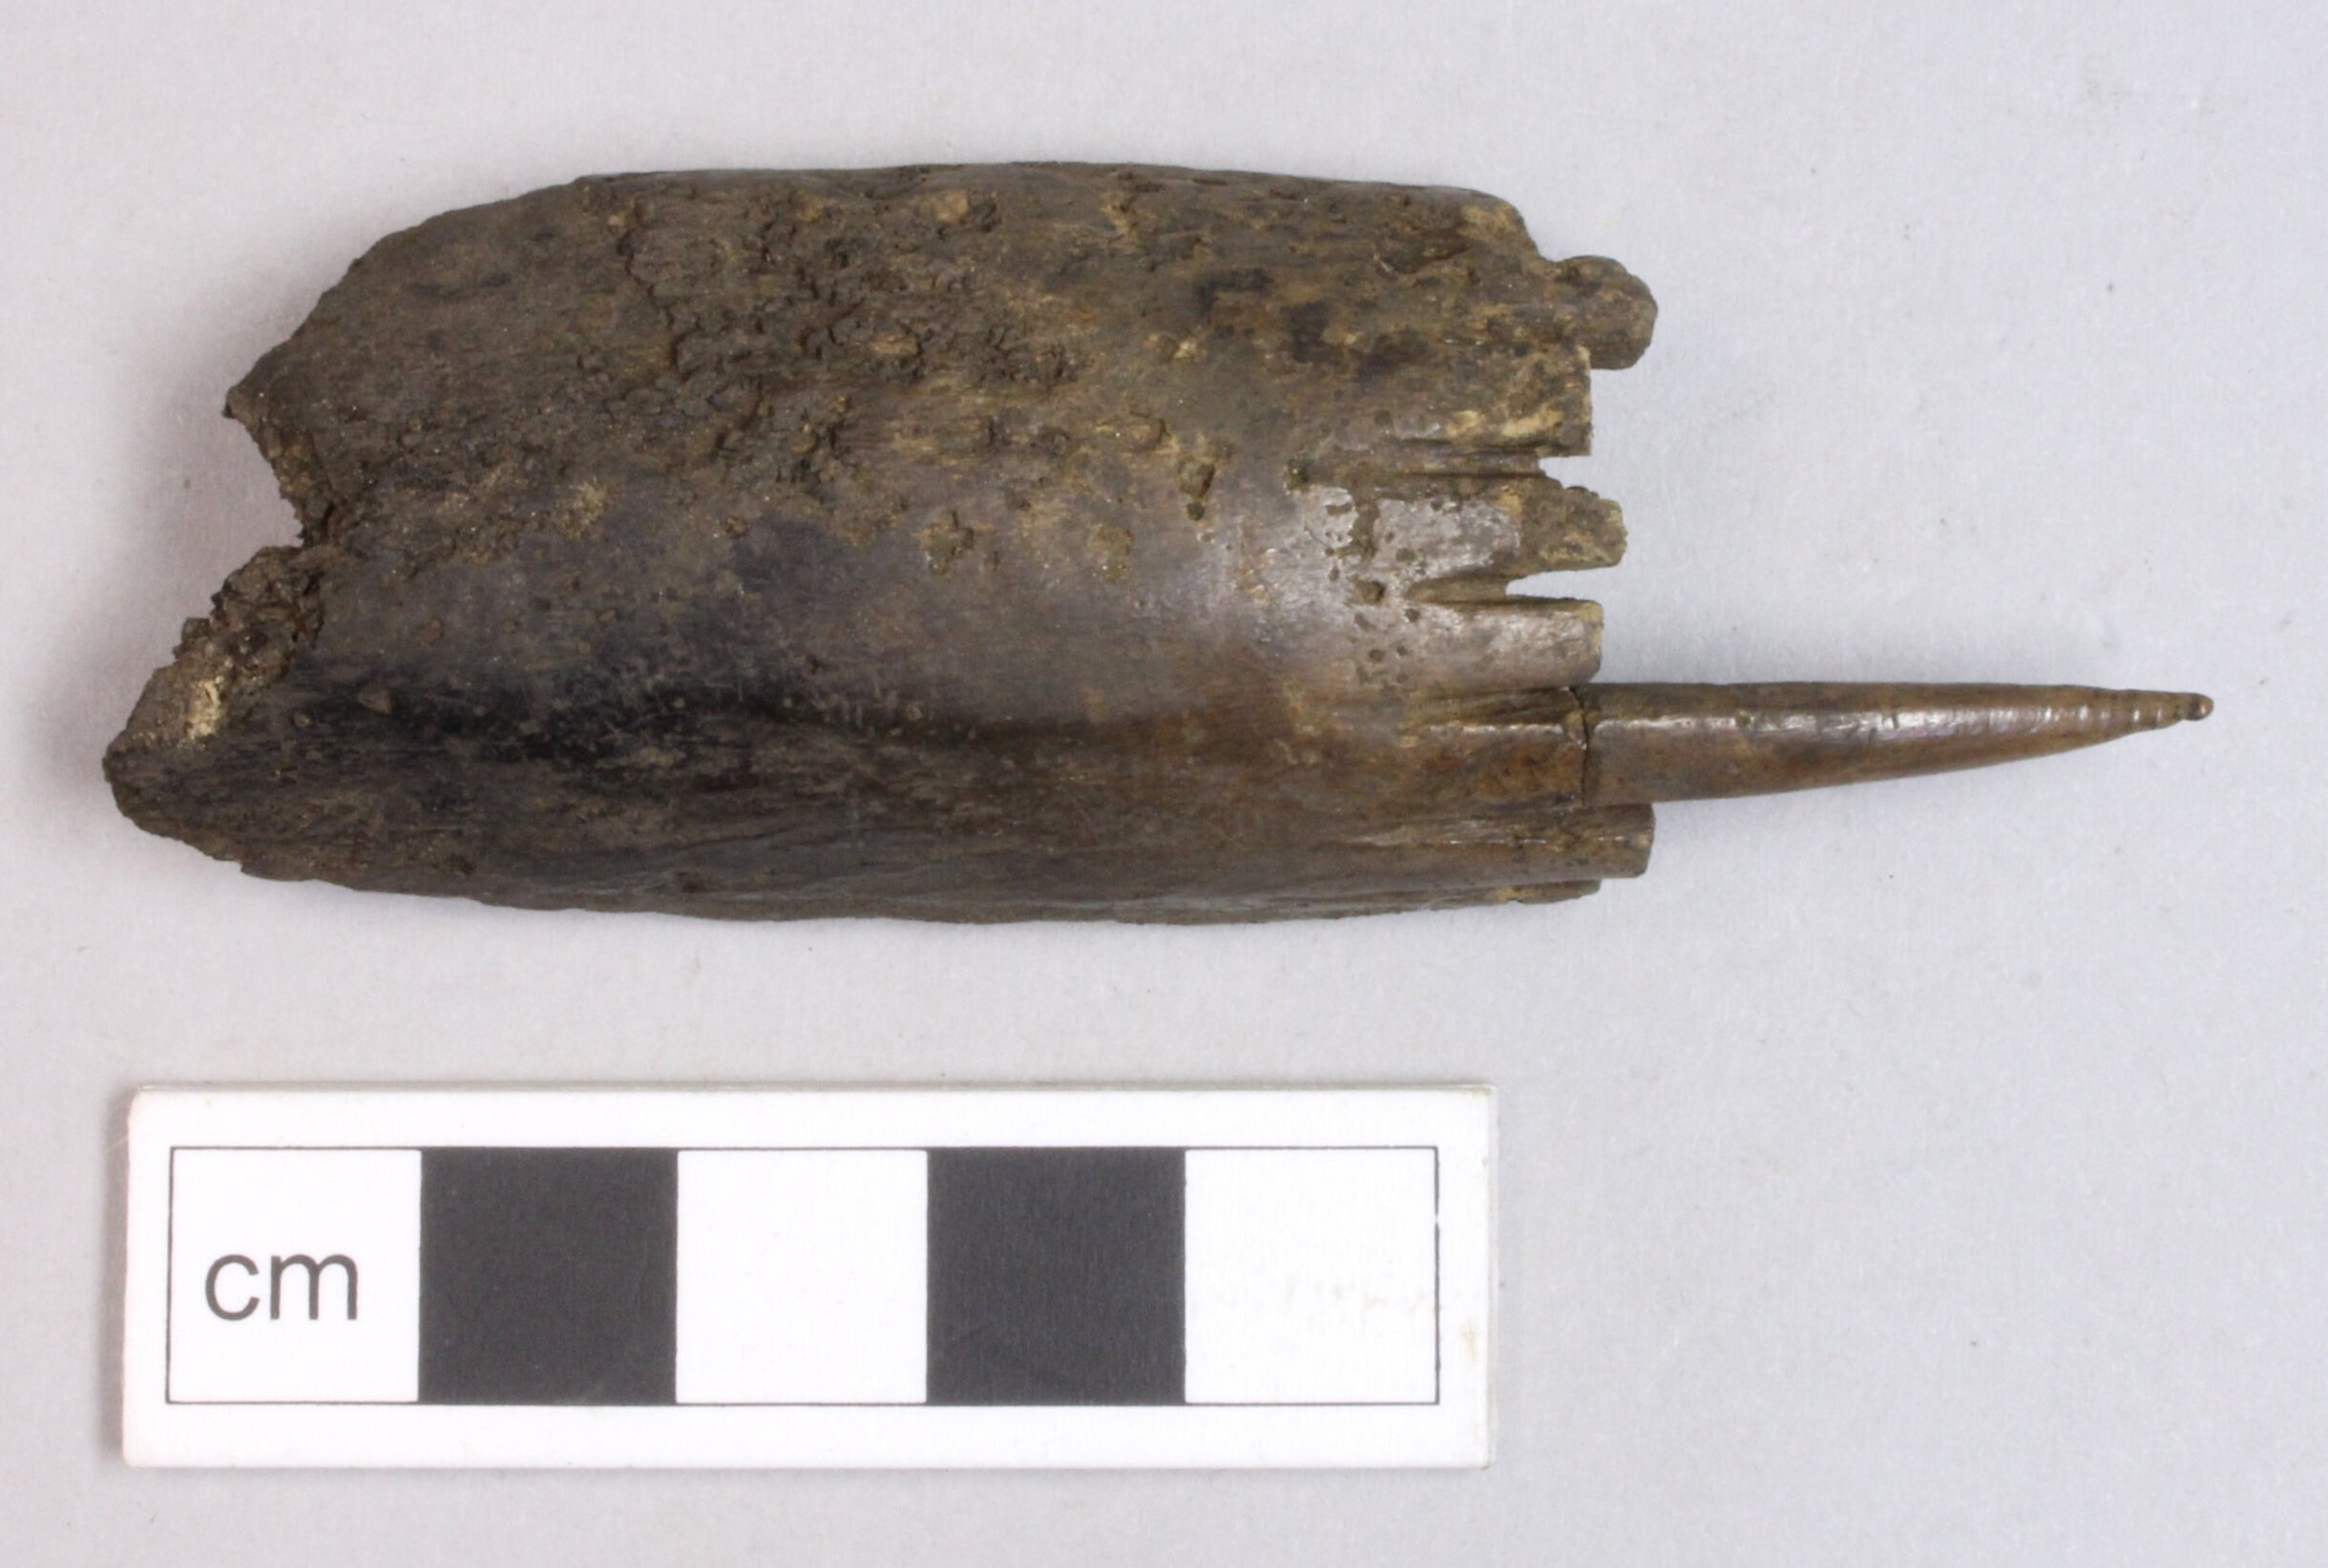   Bone comb | Image: AOC Archaeology  